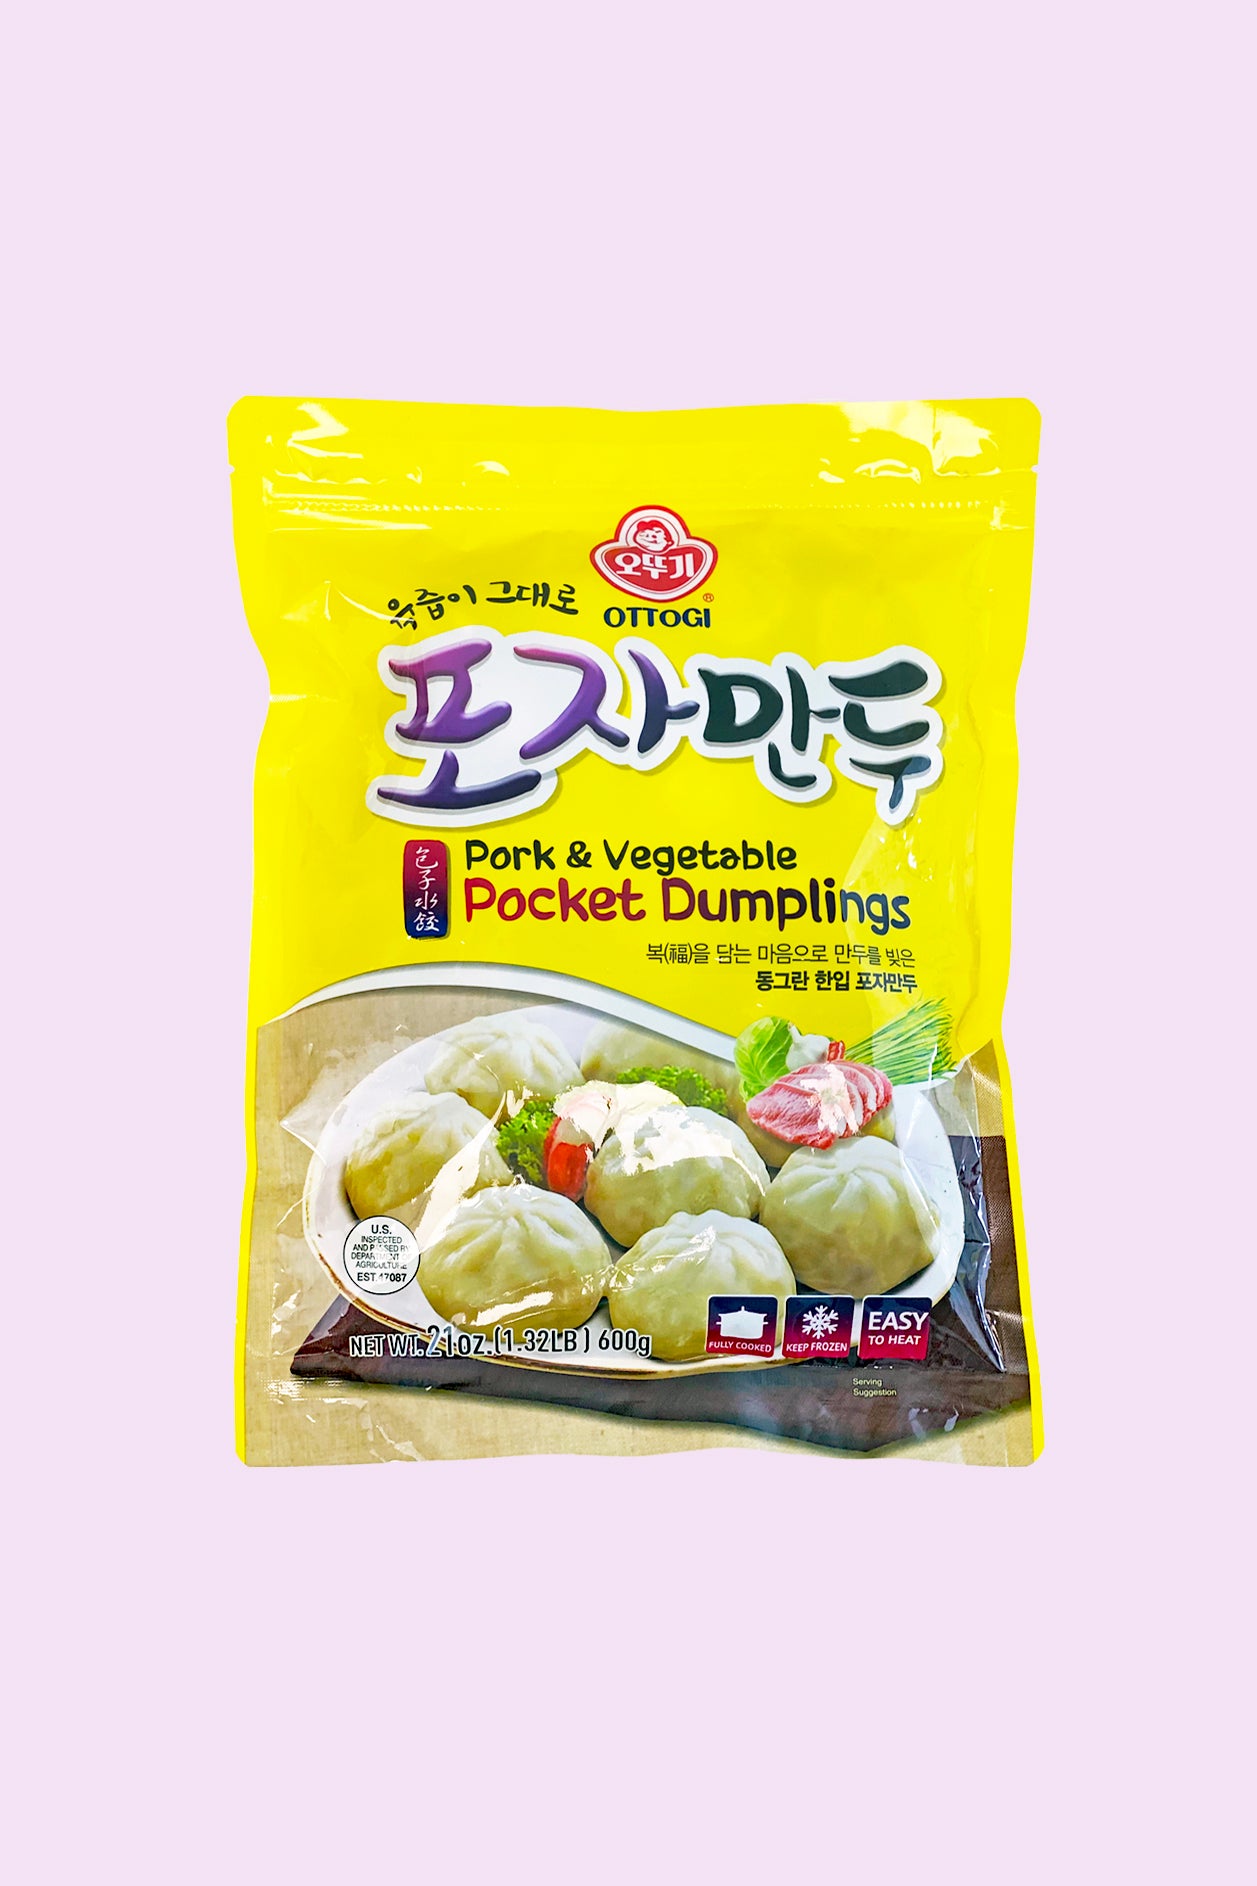 Pocket Pork & Vegetable Dumplings